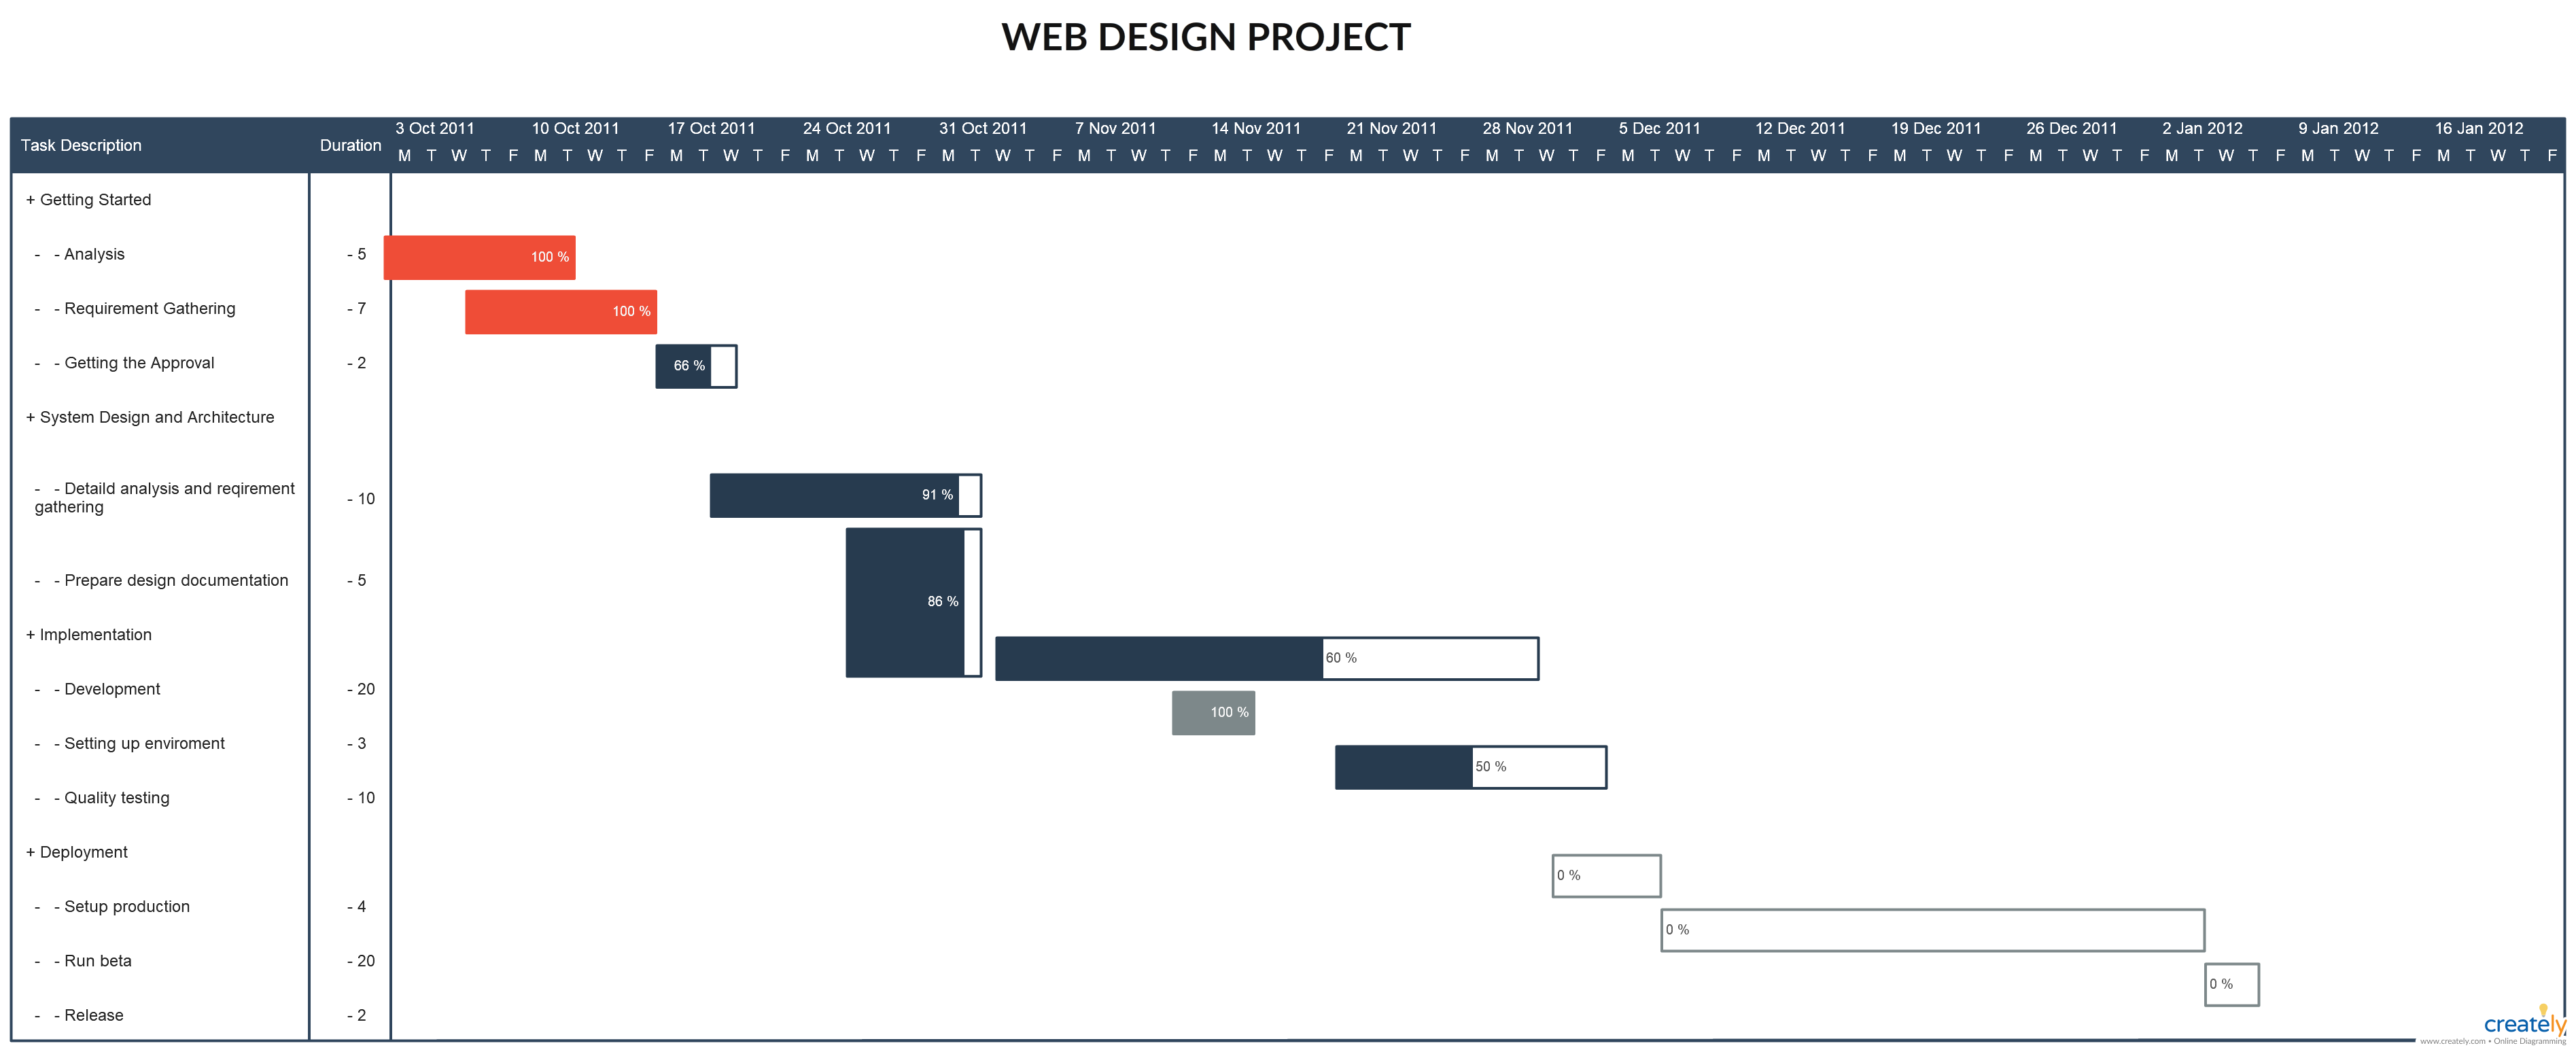 Gantt Chart Web Design Project This Is Template Of Website Development Gantt Chart You Can Edit This Template An Web Design Projects Web Design Gantt Chart